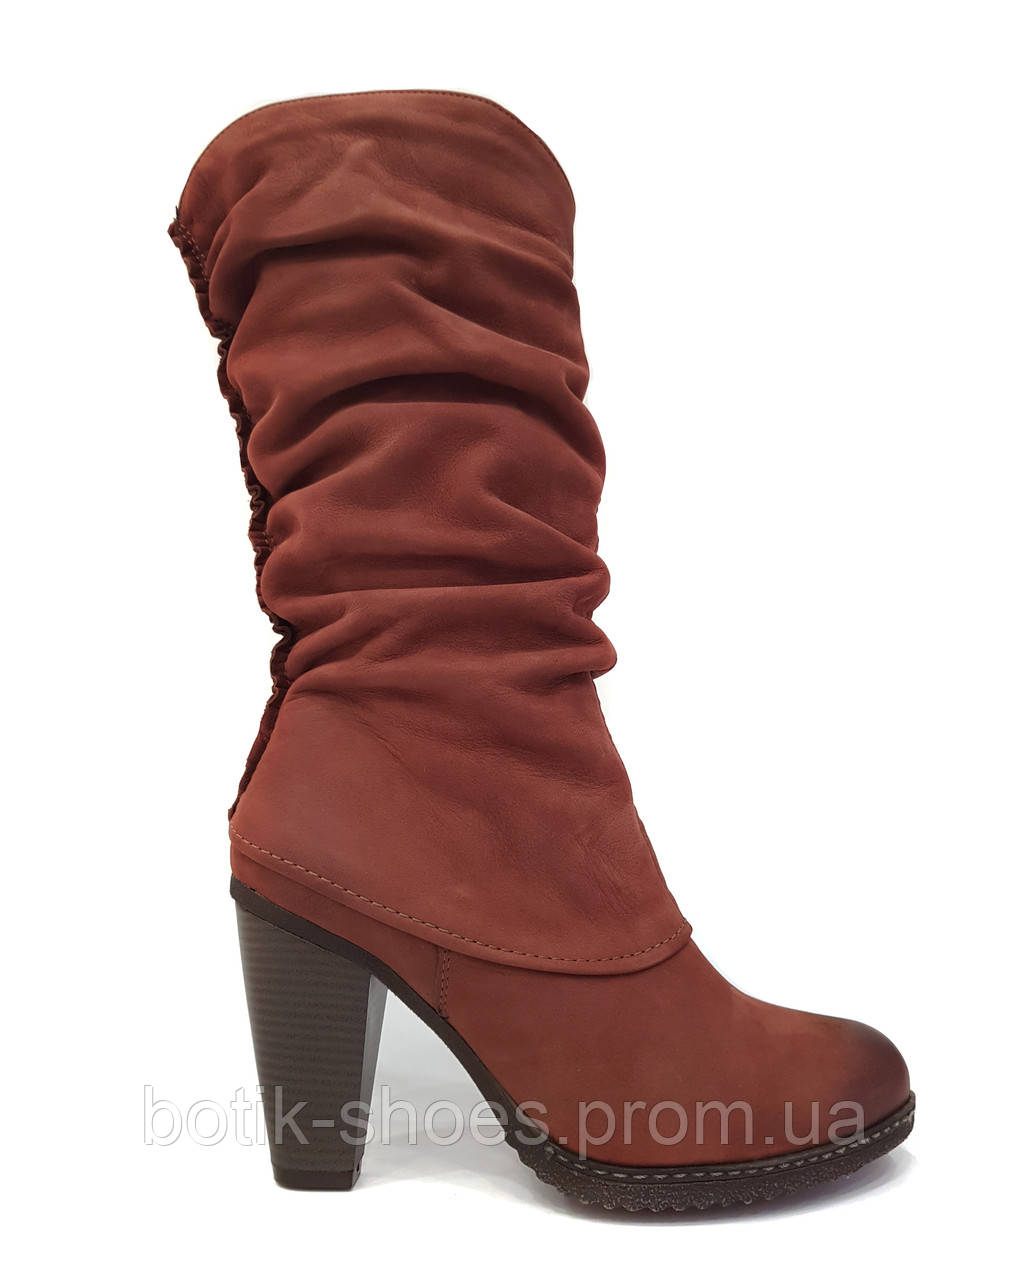 Зимові жіночі чоботи з натуральної шкіри на підборі утеплені короткі класичні якісні зручні модні польша 36 розмір Tanex 214 2023